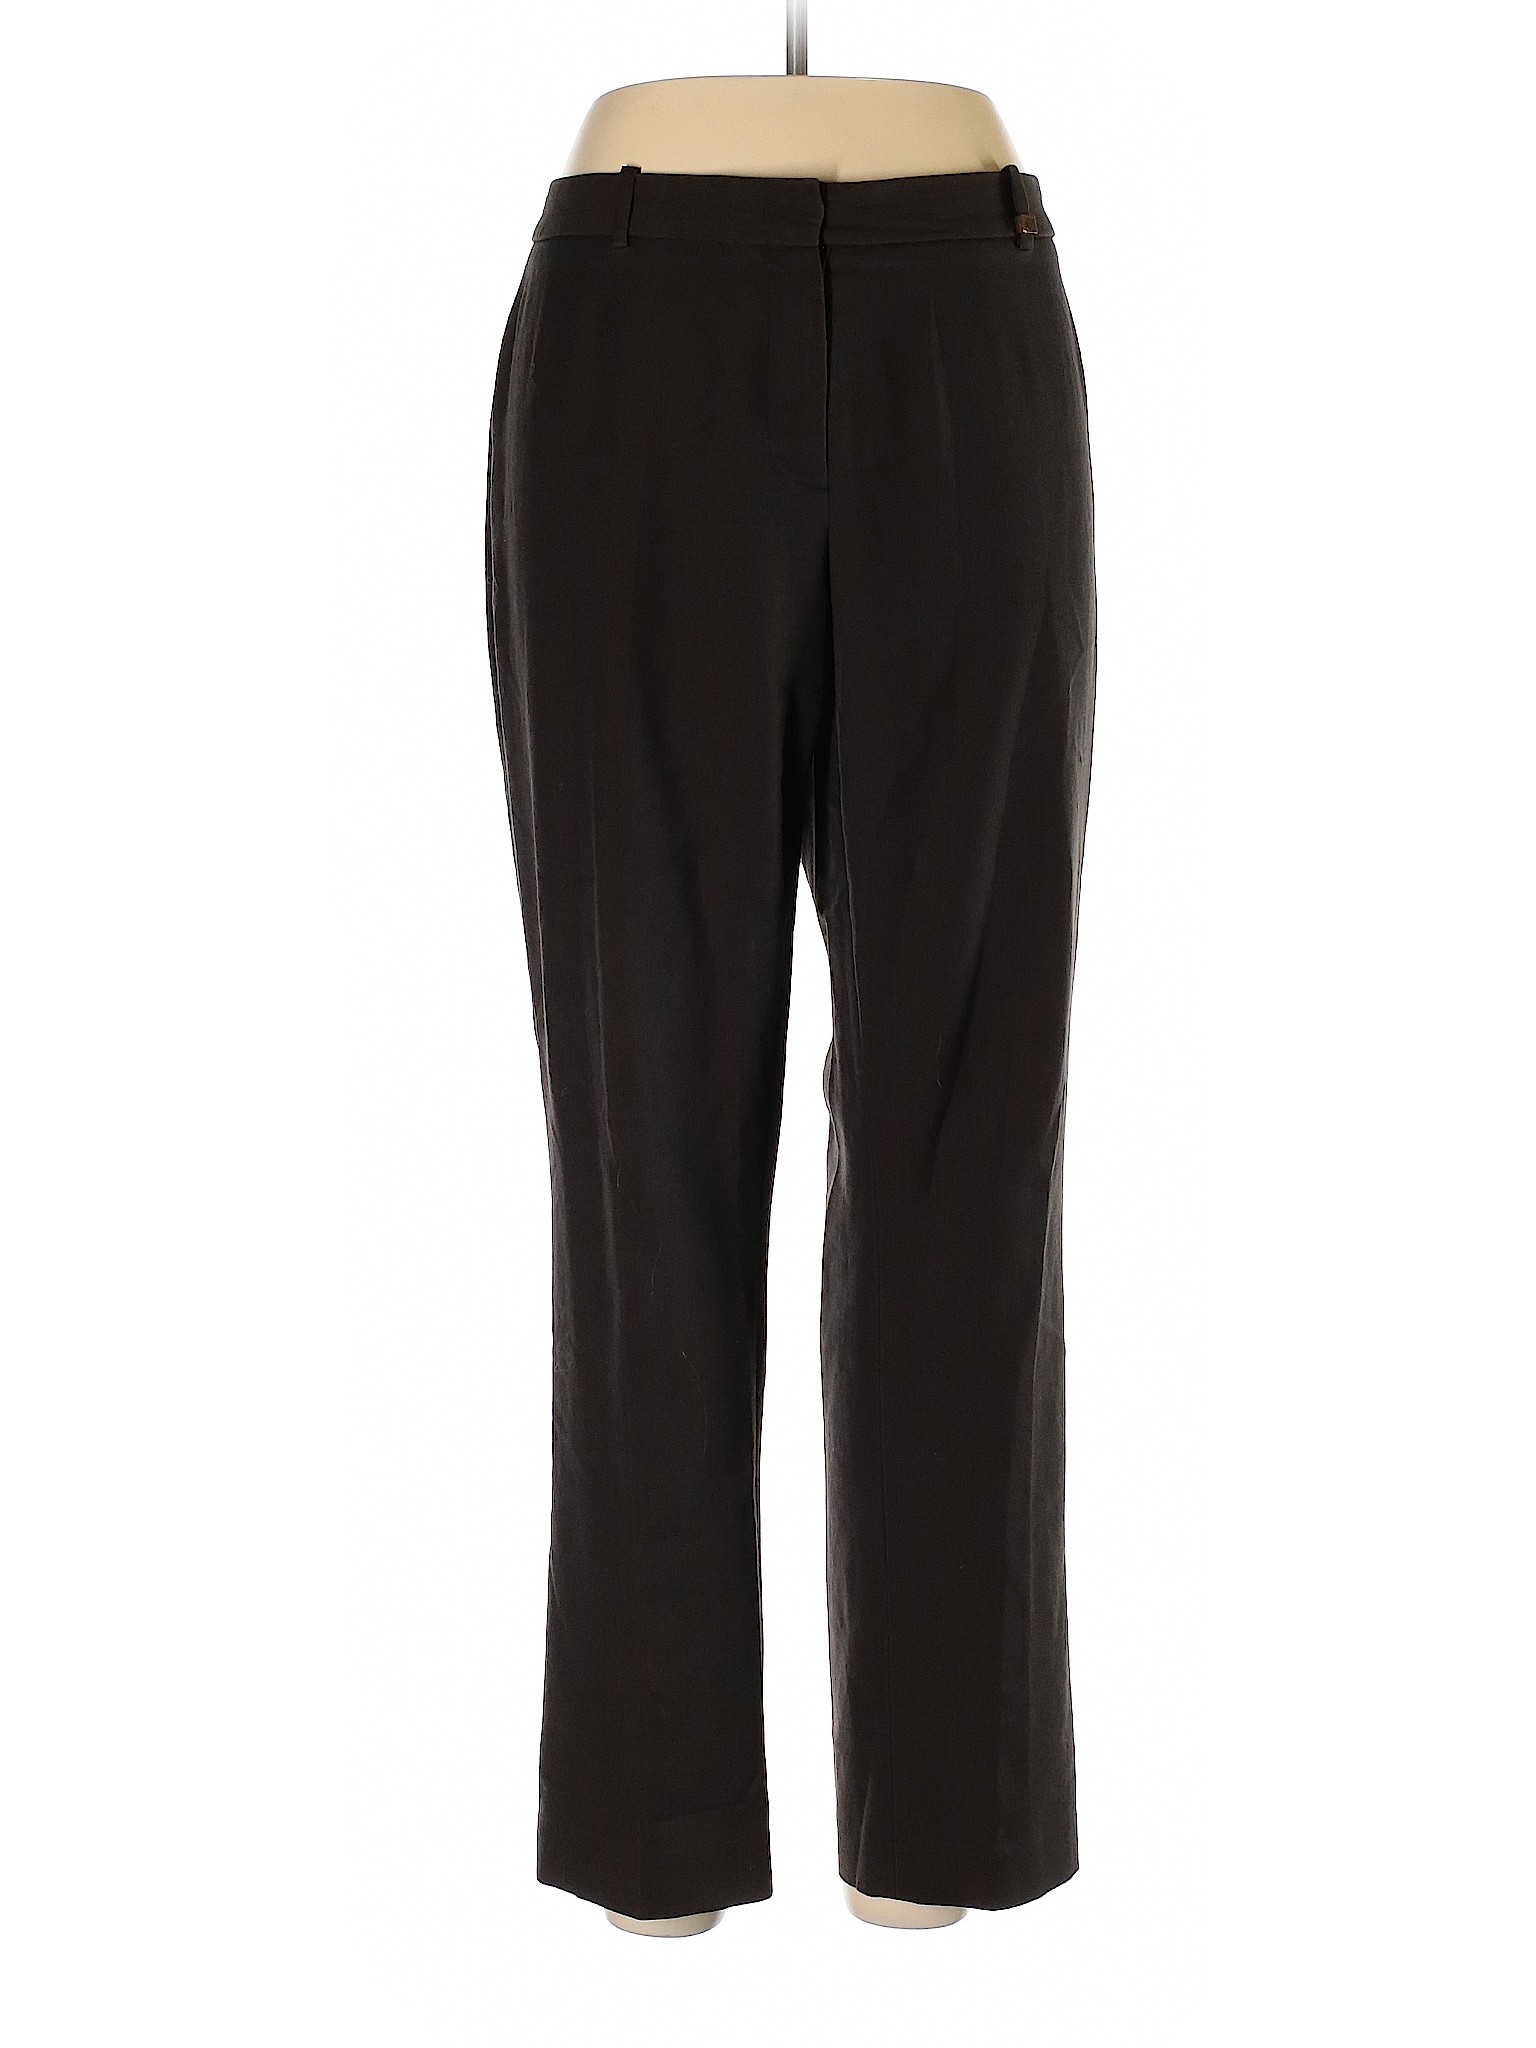 Calvin Klein Women Black Dress Pants 12 | eBay